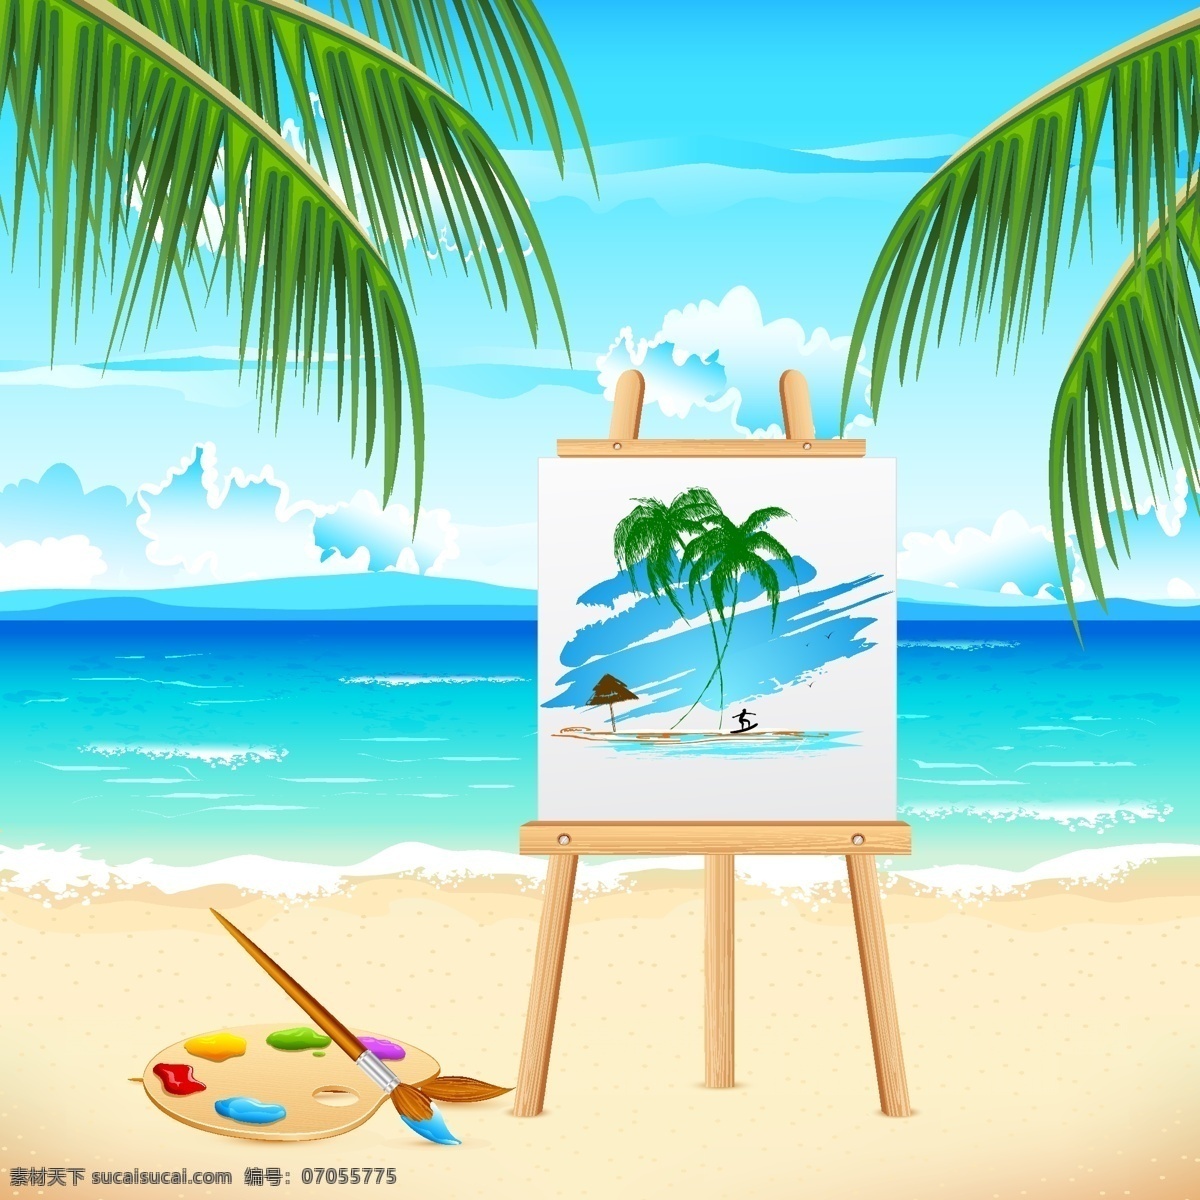 白云 大海 风景 海浪 海滩 画画 绘画 蓝天 沙滩 夏日海边 写真 油墨 颜料 水墨画 写生 椰子 椰子树 沙子 自然 矢量 自然风景 自然景观 psd源文件